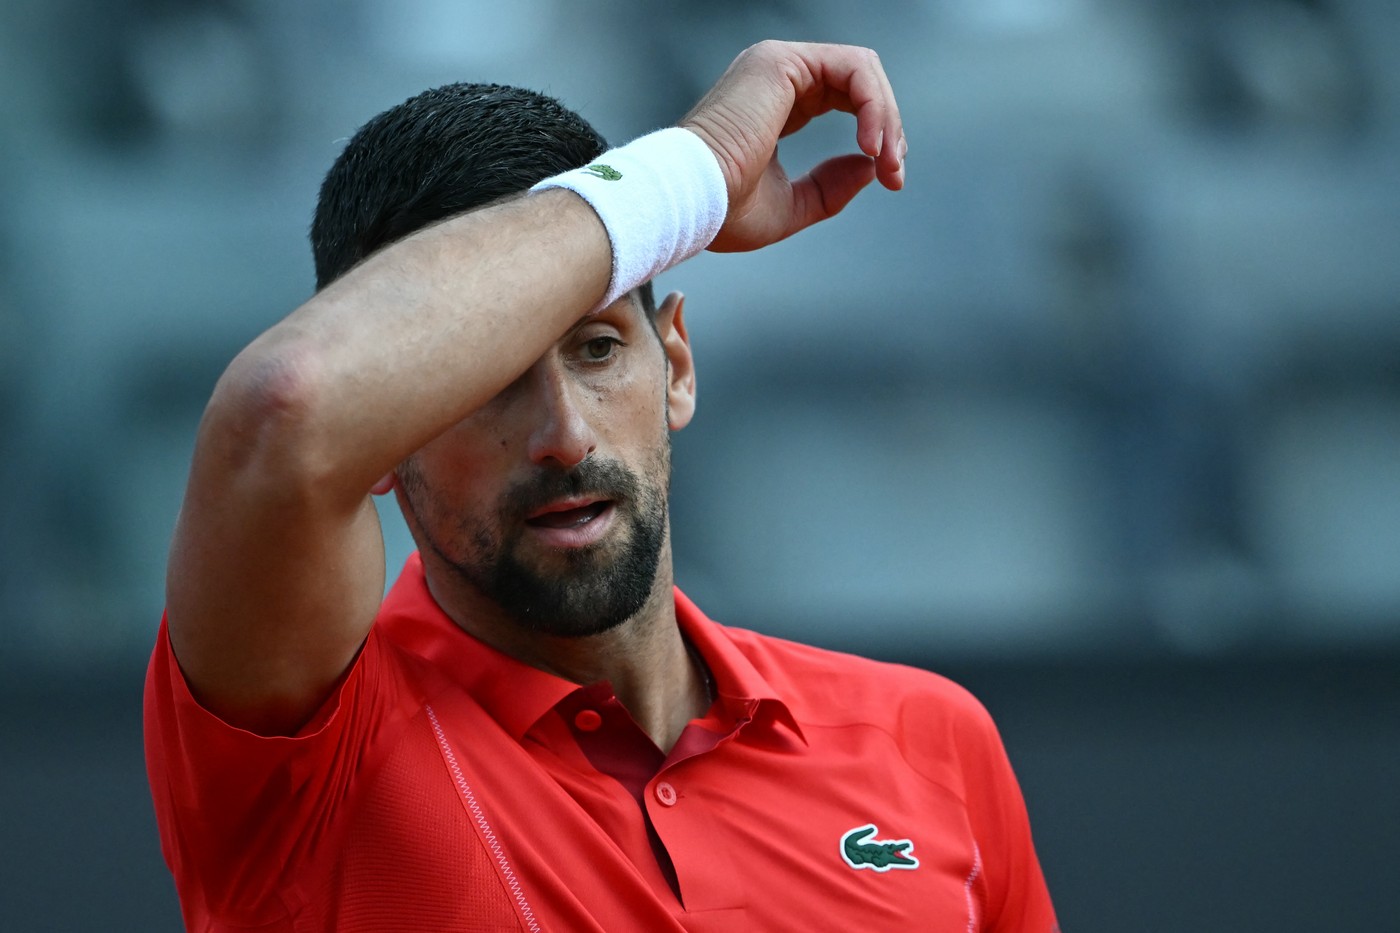 Prima reacție a lui Novak Djokovic, după ce a fost lovit în cap cu o sticlă